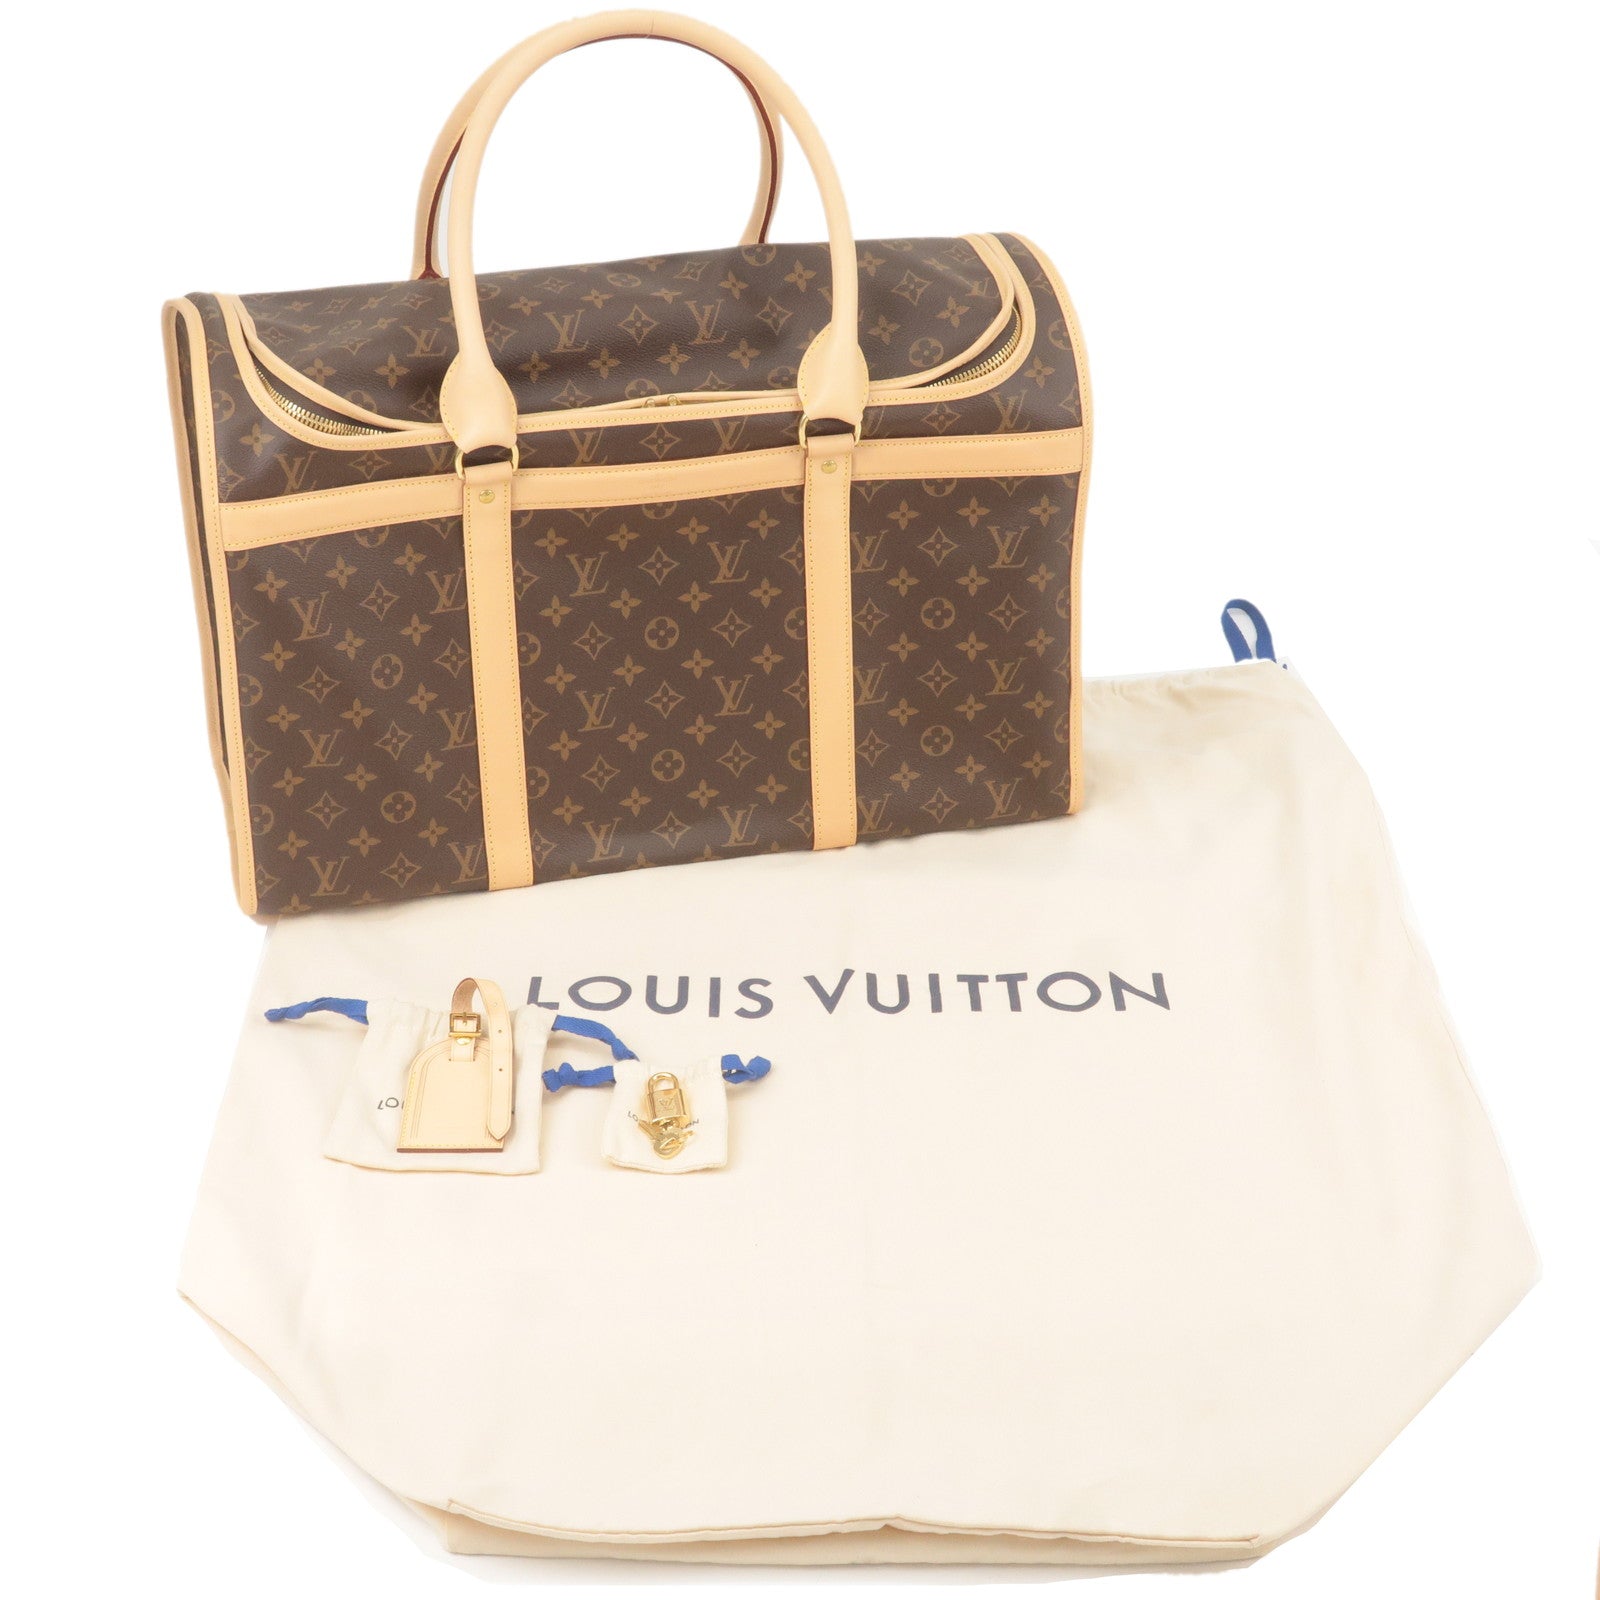 Louis Vuitton Monogram Dog Carrier 50 Sac Chien Pet Bag 64lz77s at